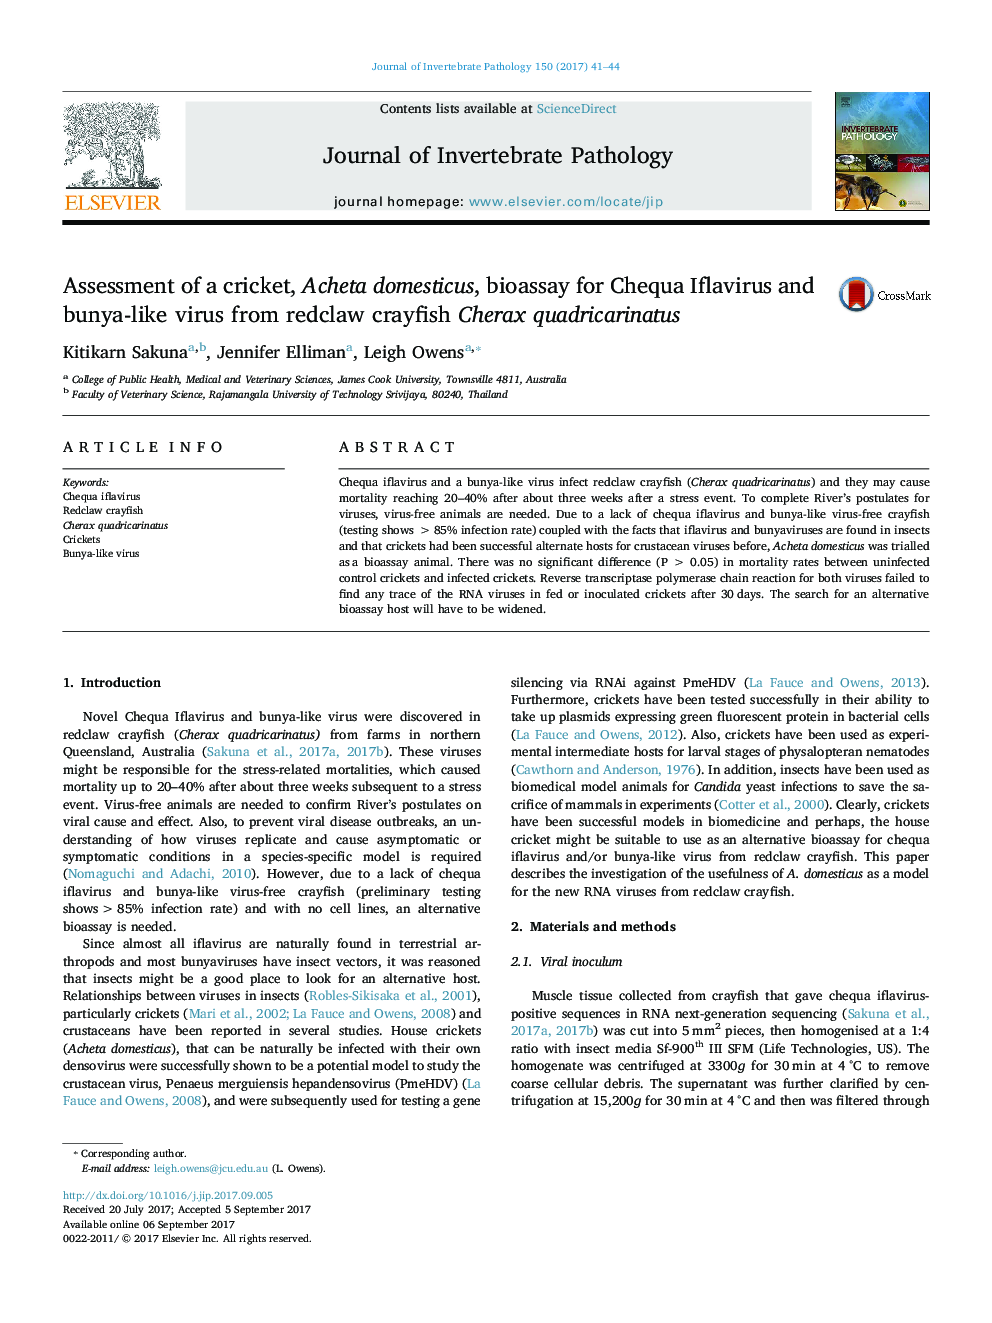 Assessment of a cricket, Acheta domesticus, bioassay for Chequa Iflavirus and bunya-like virus from redclaw crayfish Cherax quadricarinatus